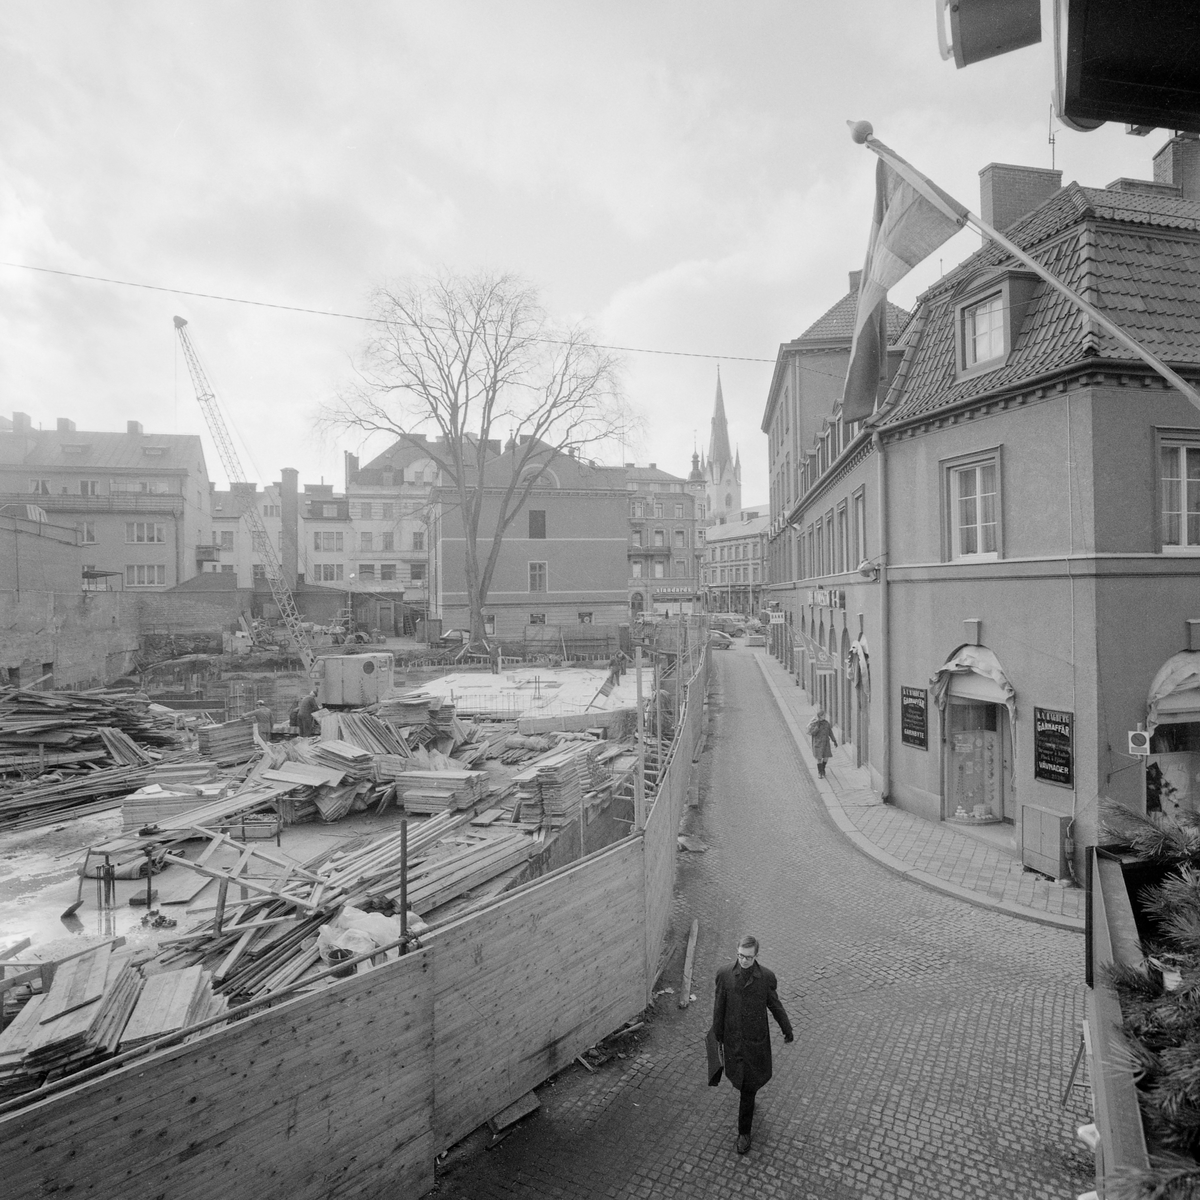 I mitten av 1960-talet revs det mesta av den återstående träkåksbebyggelsen inom kvarteret Domaren i Linköping. Lyckligtvis skonades det så kallade Berget till vänster utanför bilden. Fotografiet visar grundläggningsarbetet för det nya affärshus som planeras.